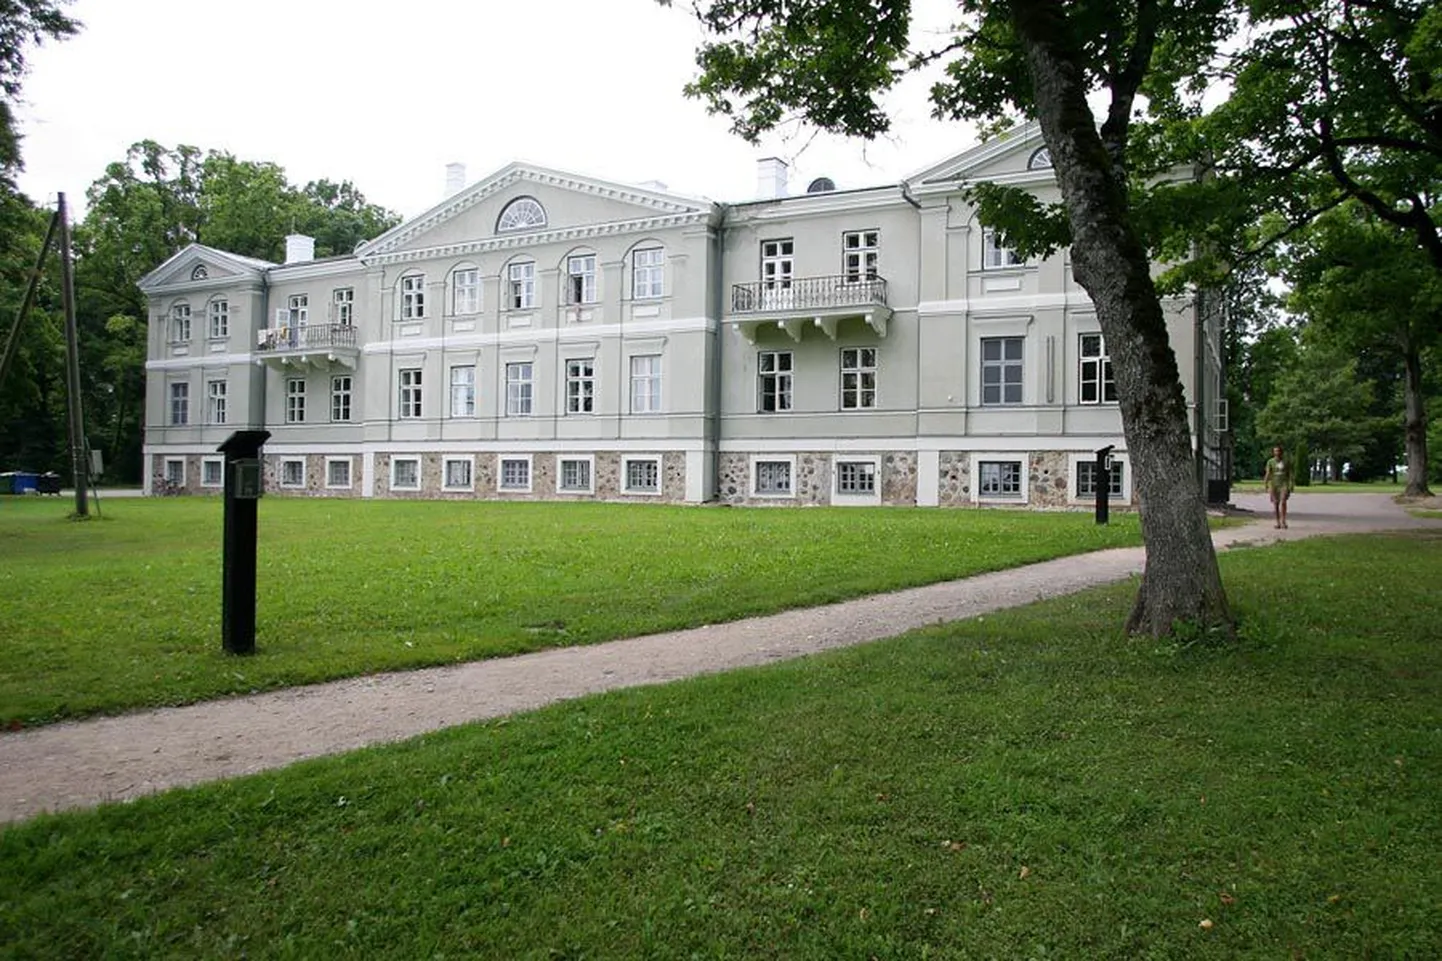 Mõisamängus ka sel aastal kaasa lööva Suure-Kõpu mõisa peahoone valmis arhitekt Emil Julius Straussi projekti järgi 1847. aastal.